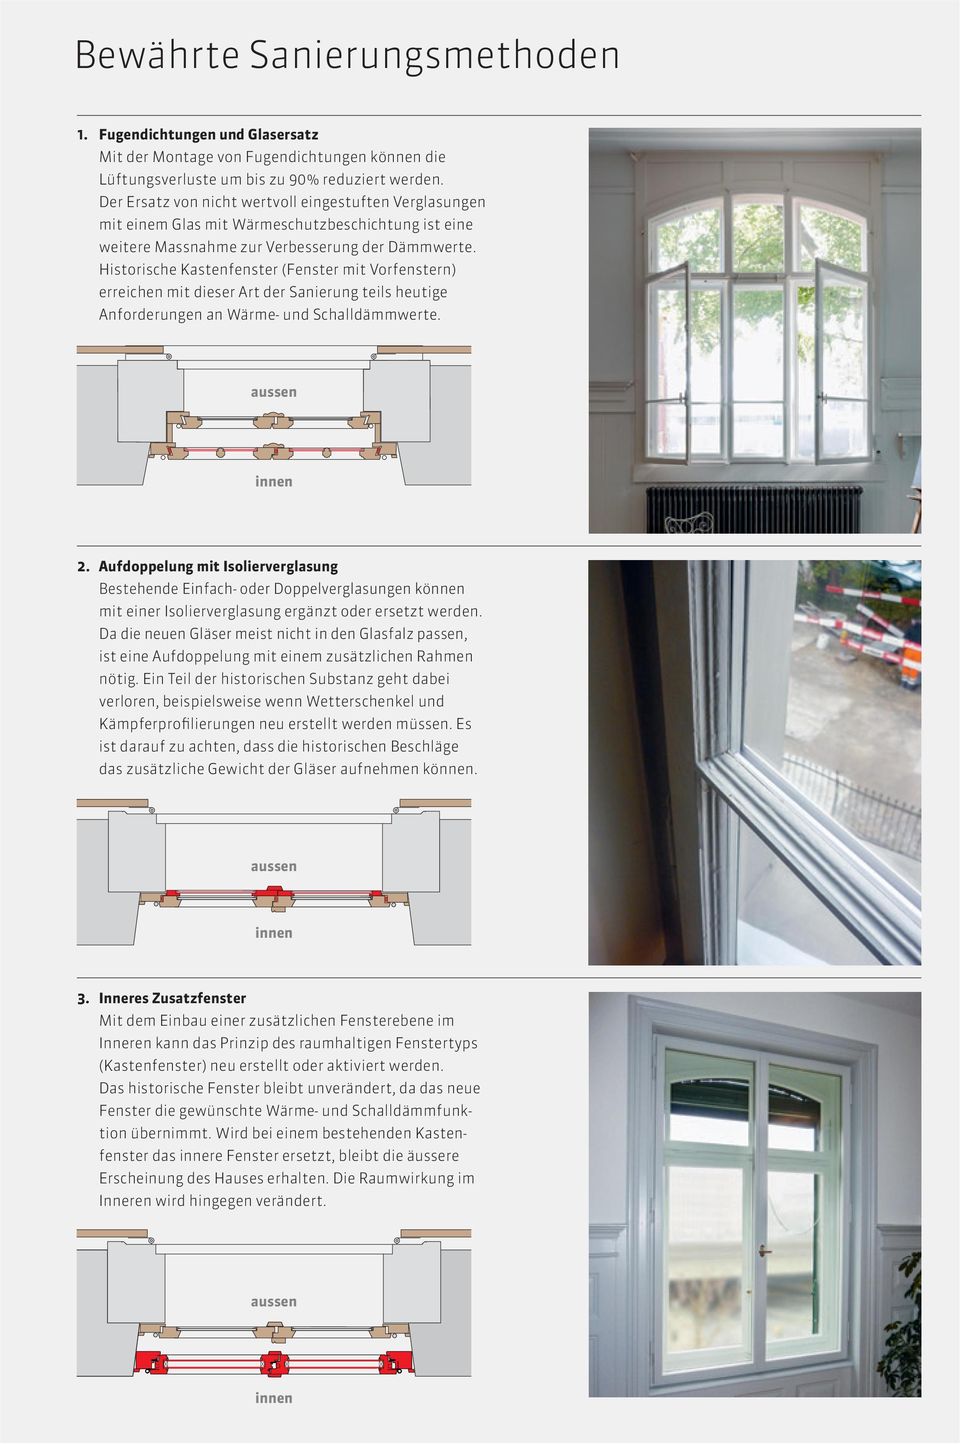 Historische Kastenfenster (Fenster mit Vorfenstern) erreichen mit dieser Art der Sanierung teils heutige Anforderungen an Wärme- und Schalldämmwerte. 2.